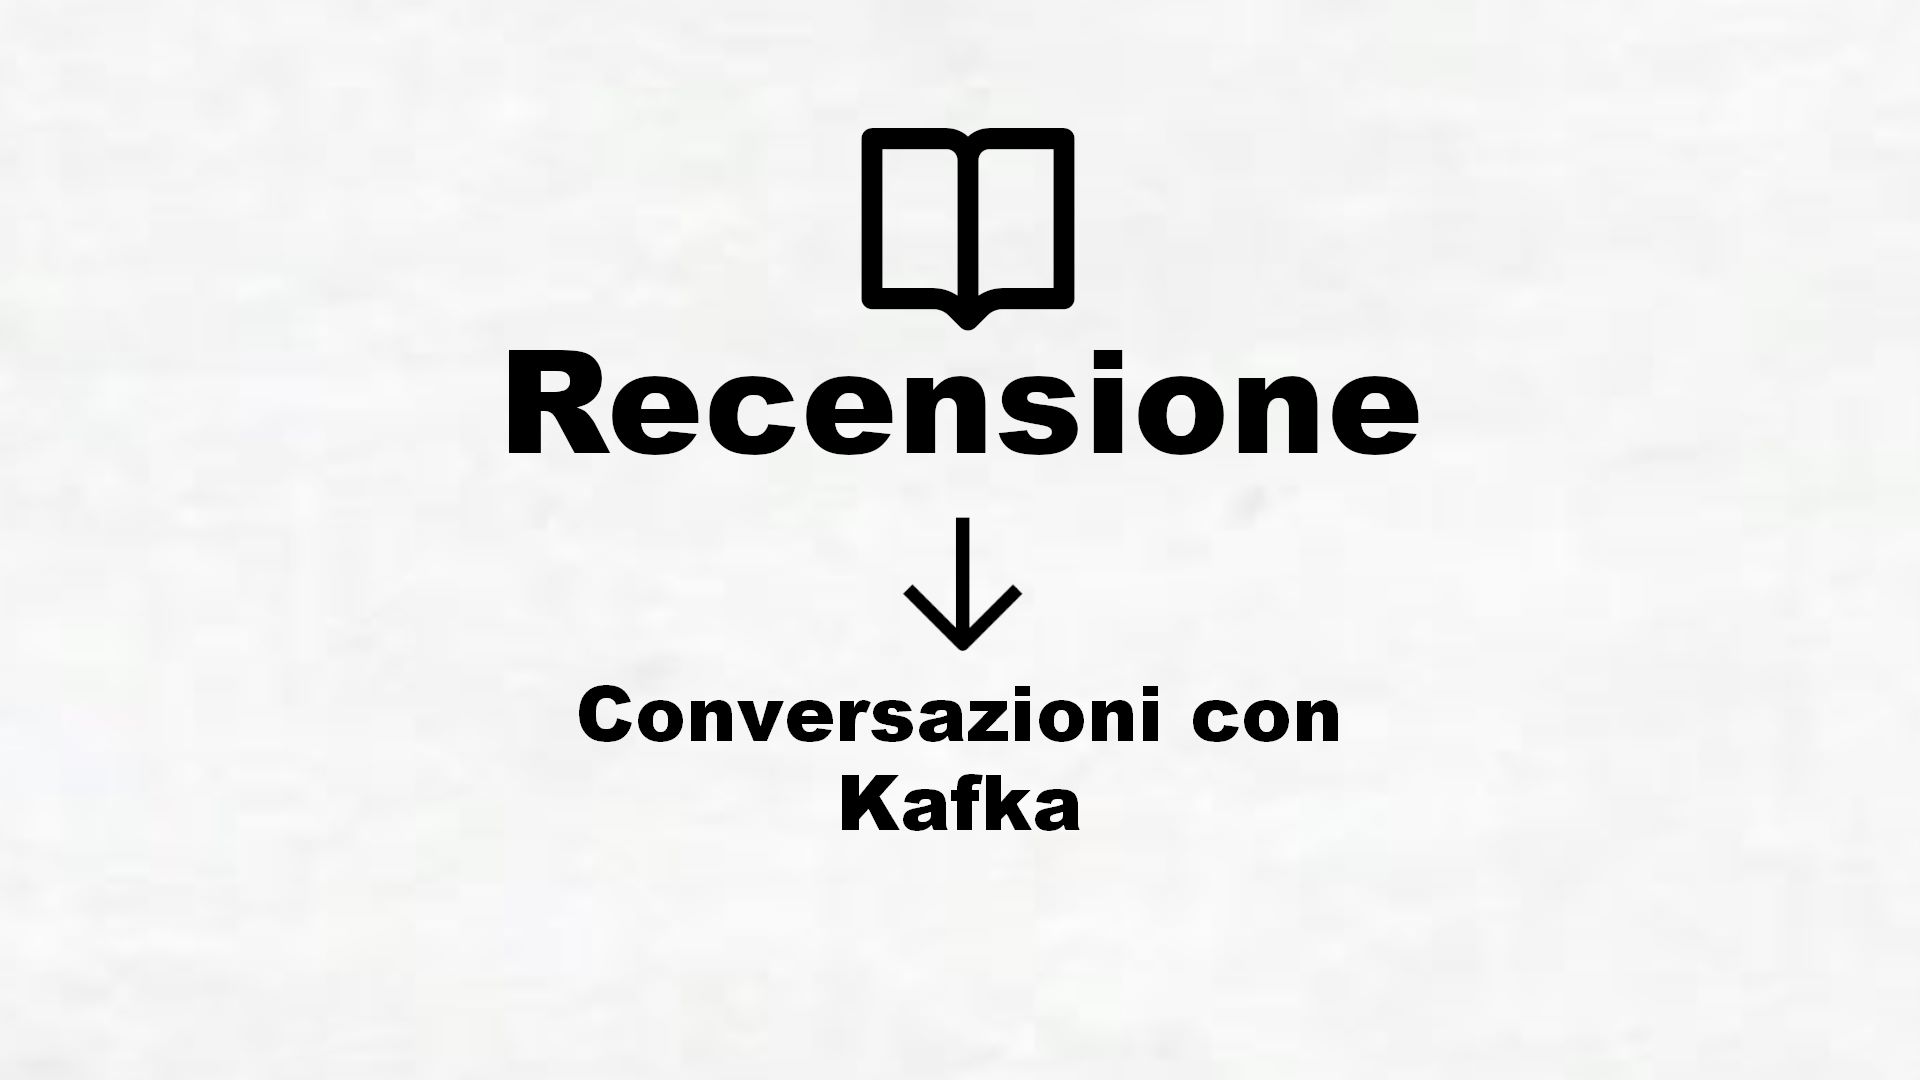 Conversazioni con Kafka – Recensione Libro